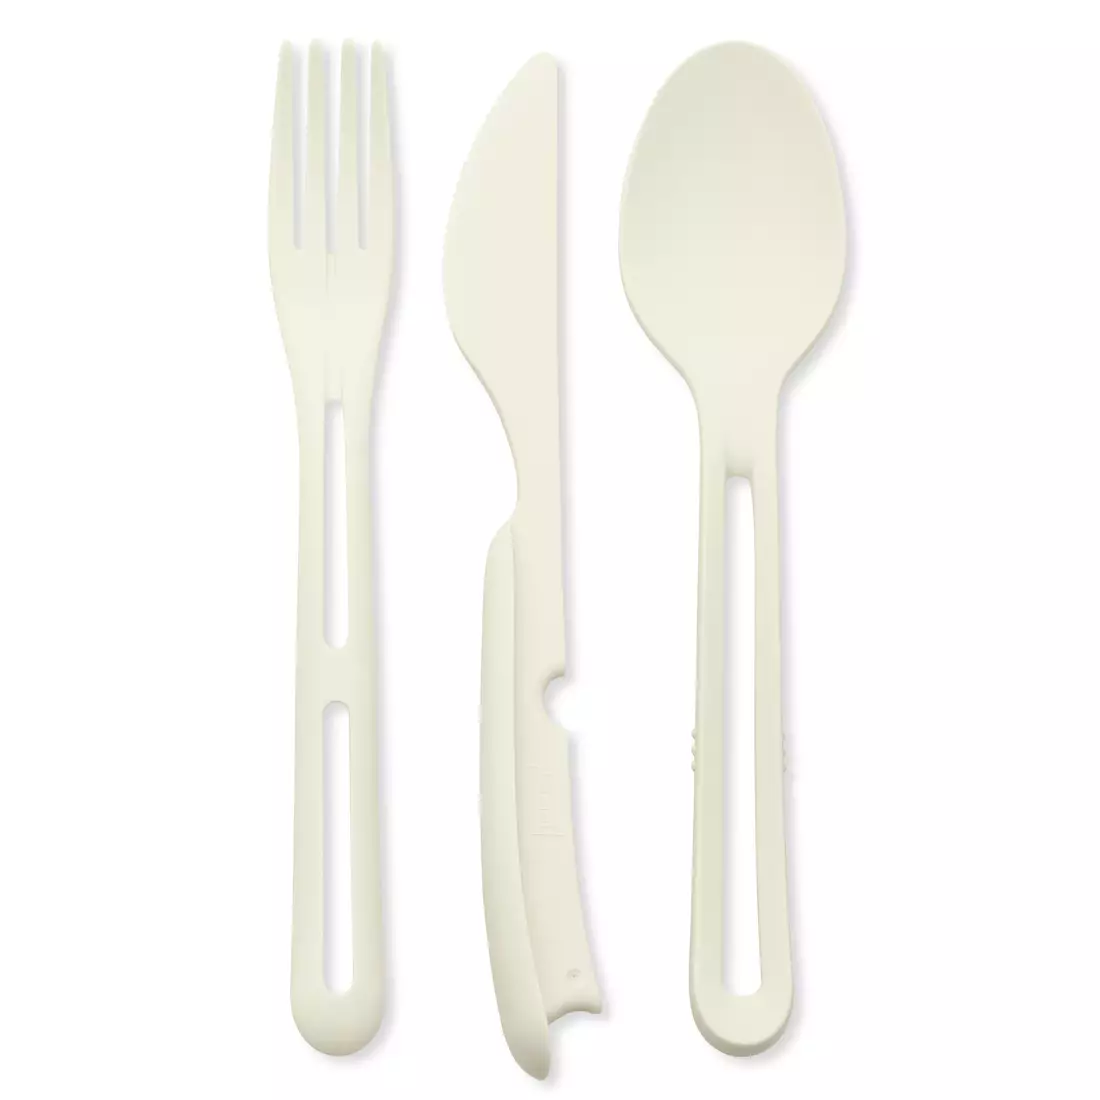 Koziol Klikk cutlery set, 3-pieces, white